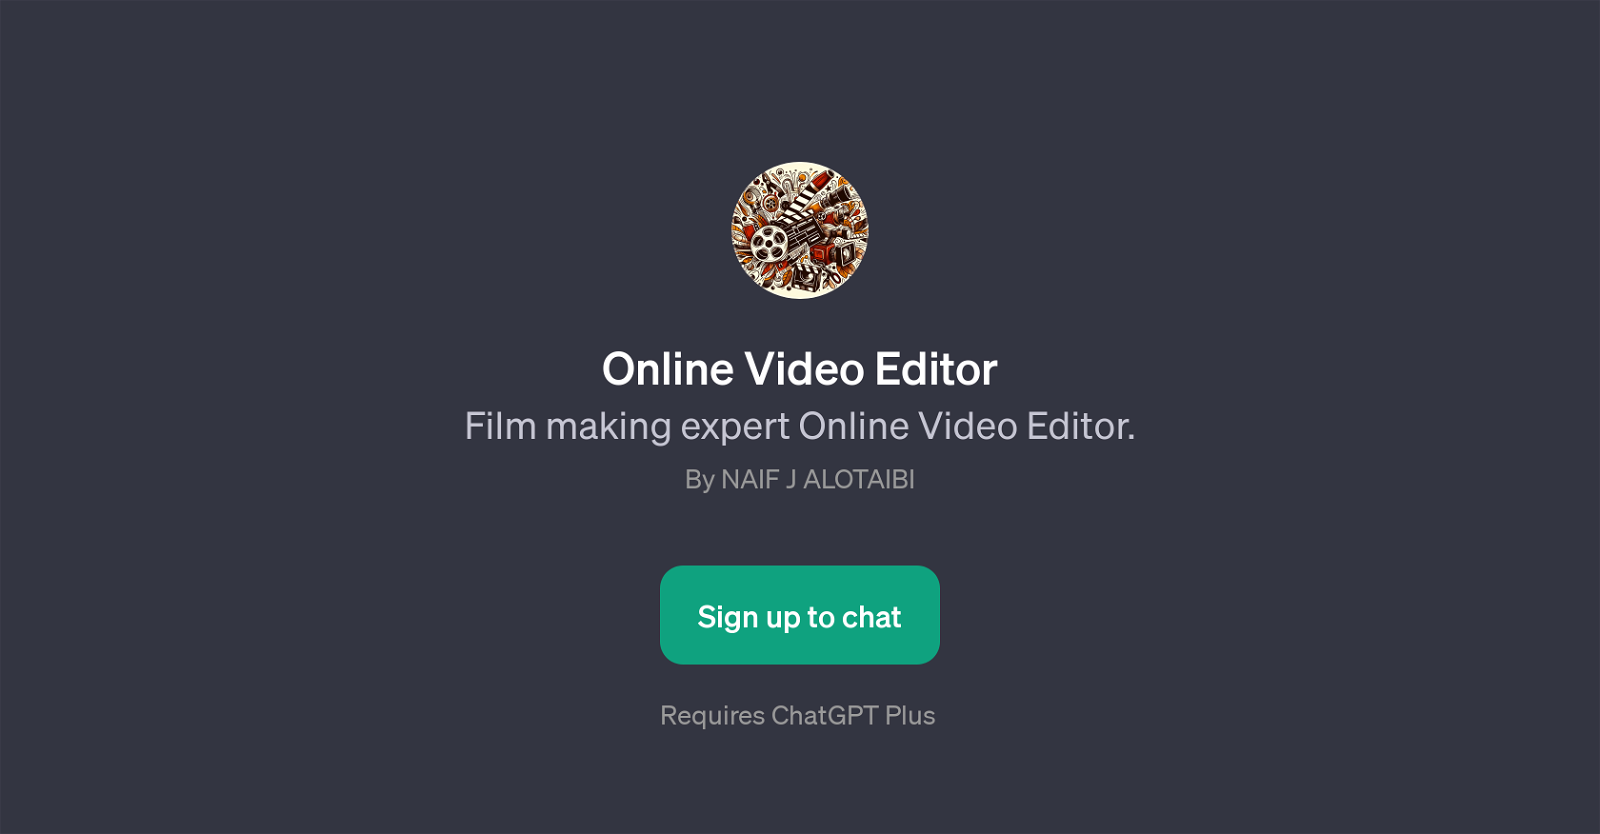 Online Video Editor website